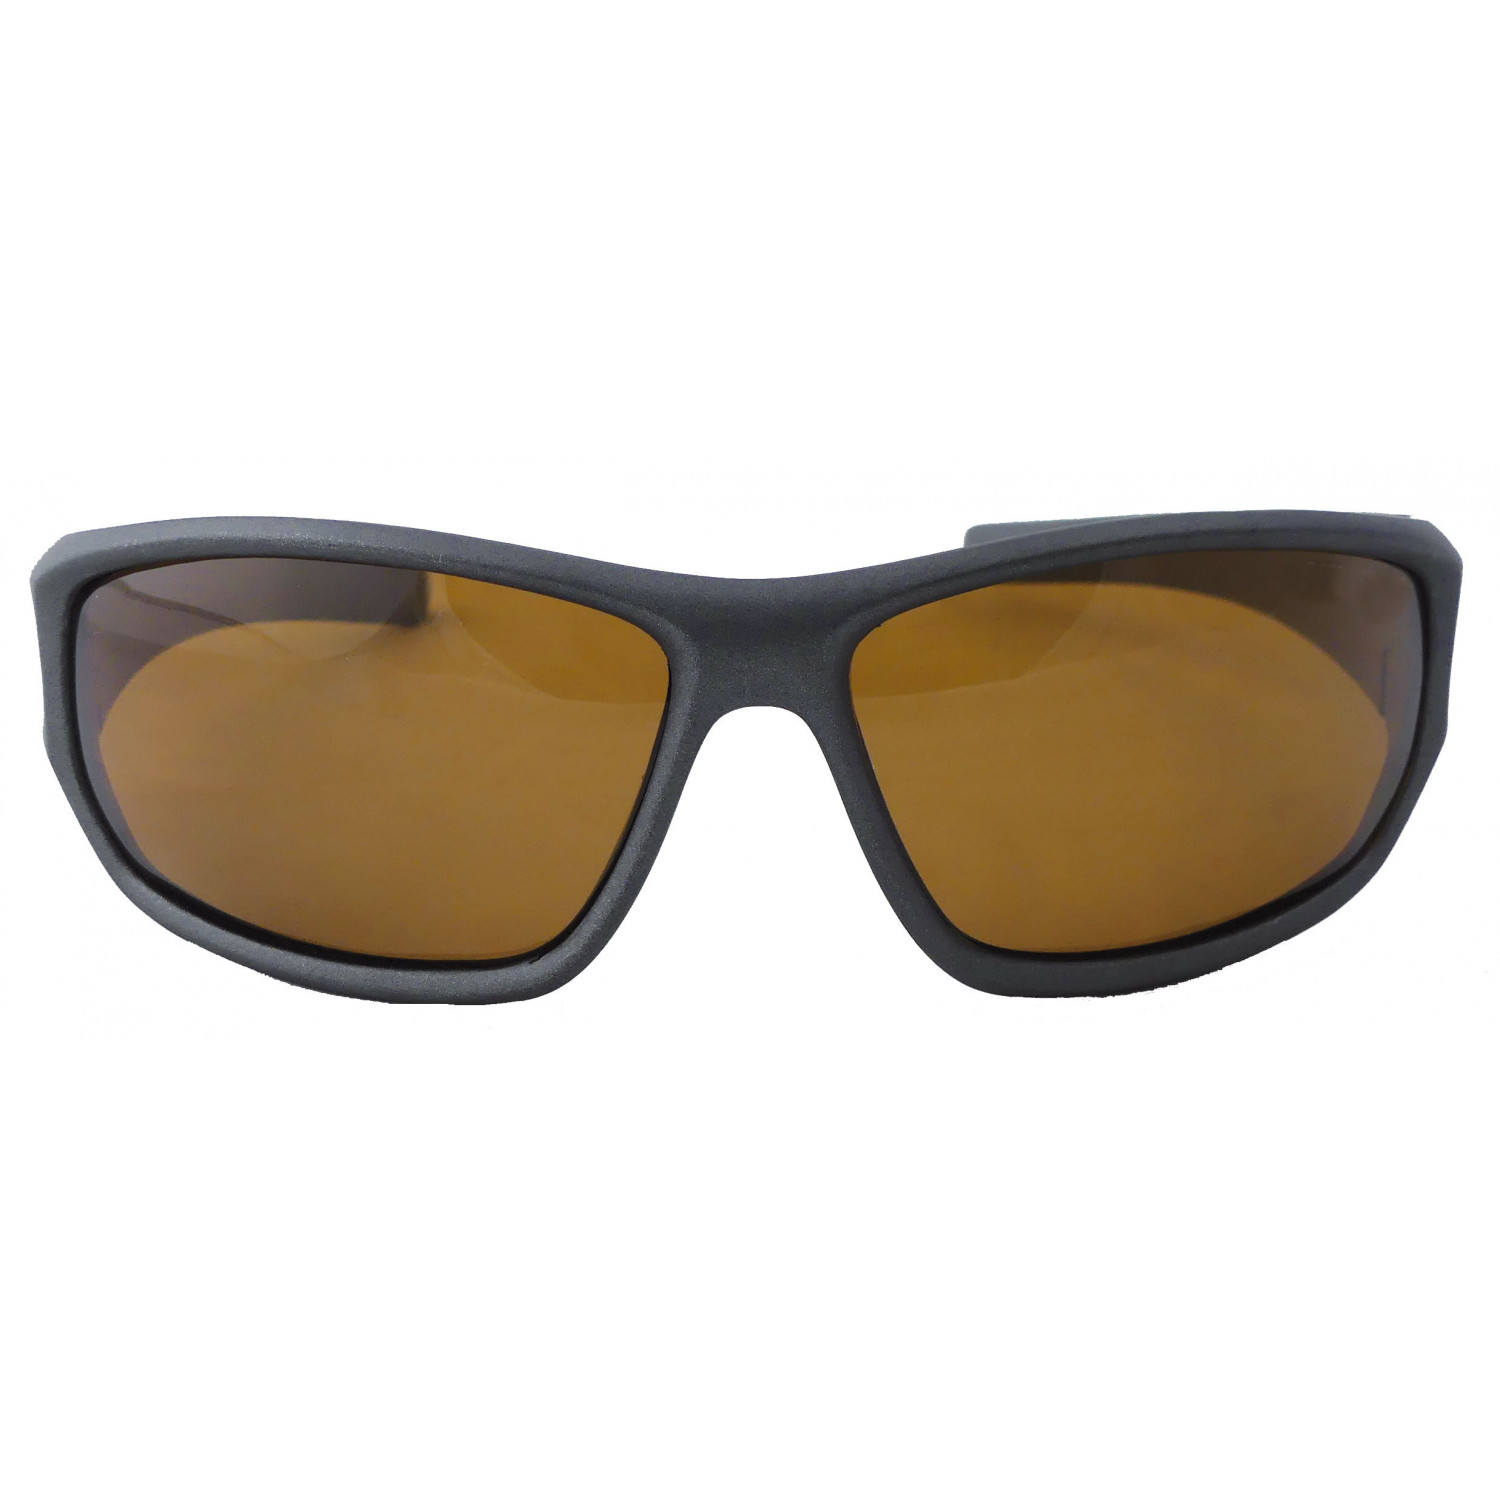 Gläsern Suxxes Polarisationsbrille mit braunen schwarz